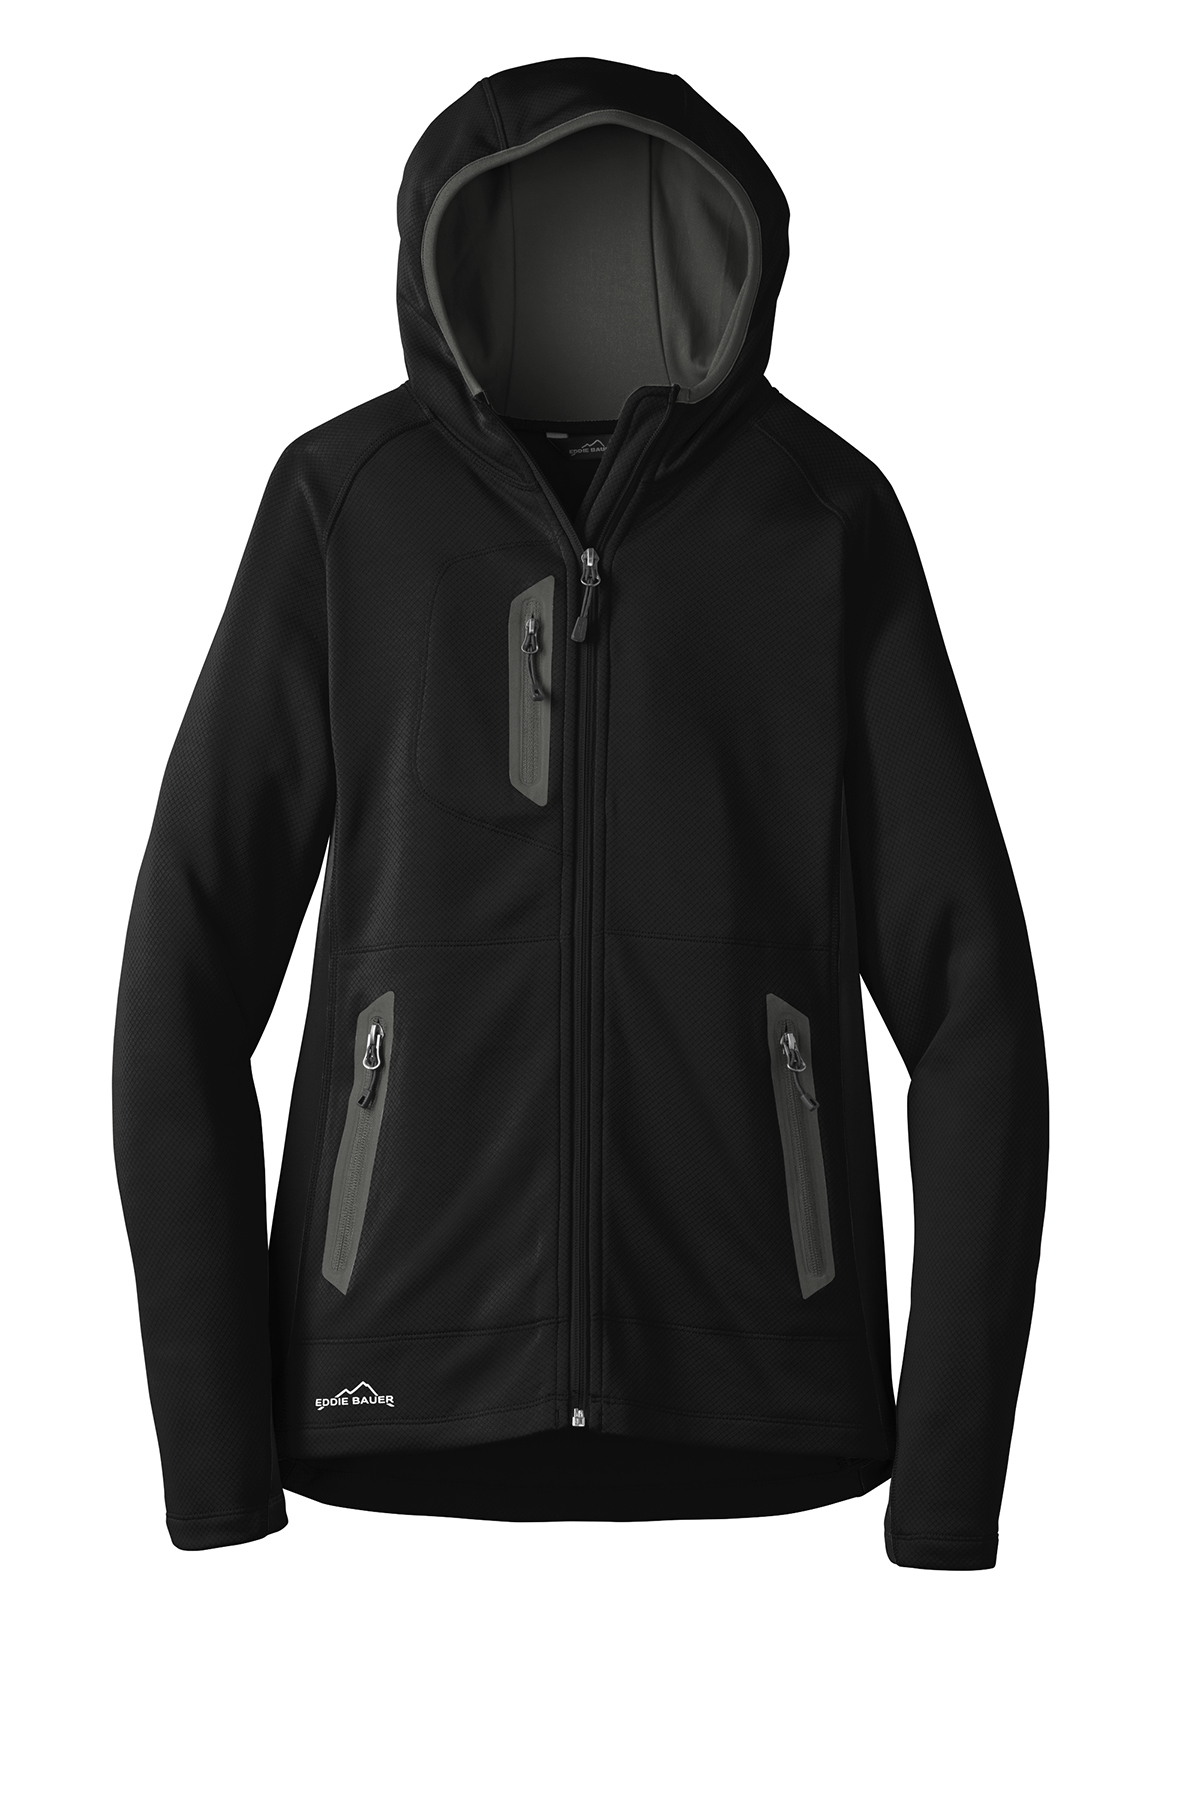 Eddie Bauer Ladies Sport Hooded Full-Zip Fleece Jacket | Product ...